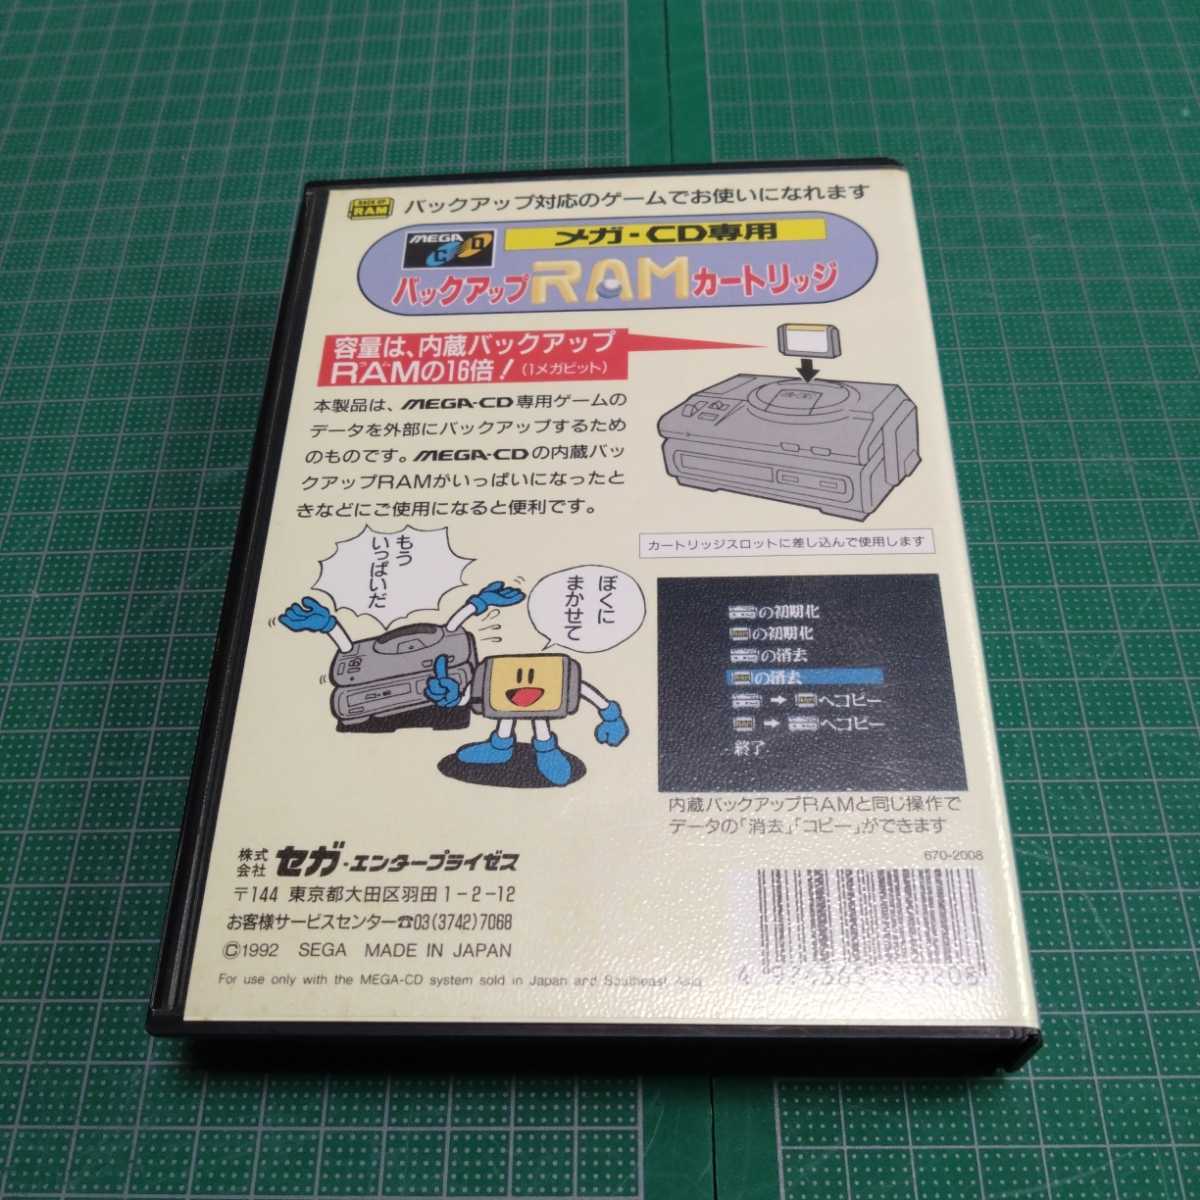  Sega Mega Drive mega CD backup RAM cartridge 